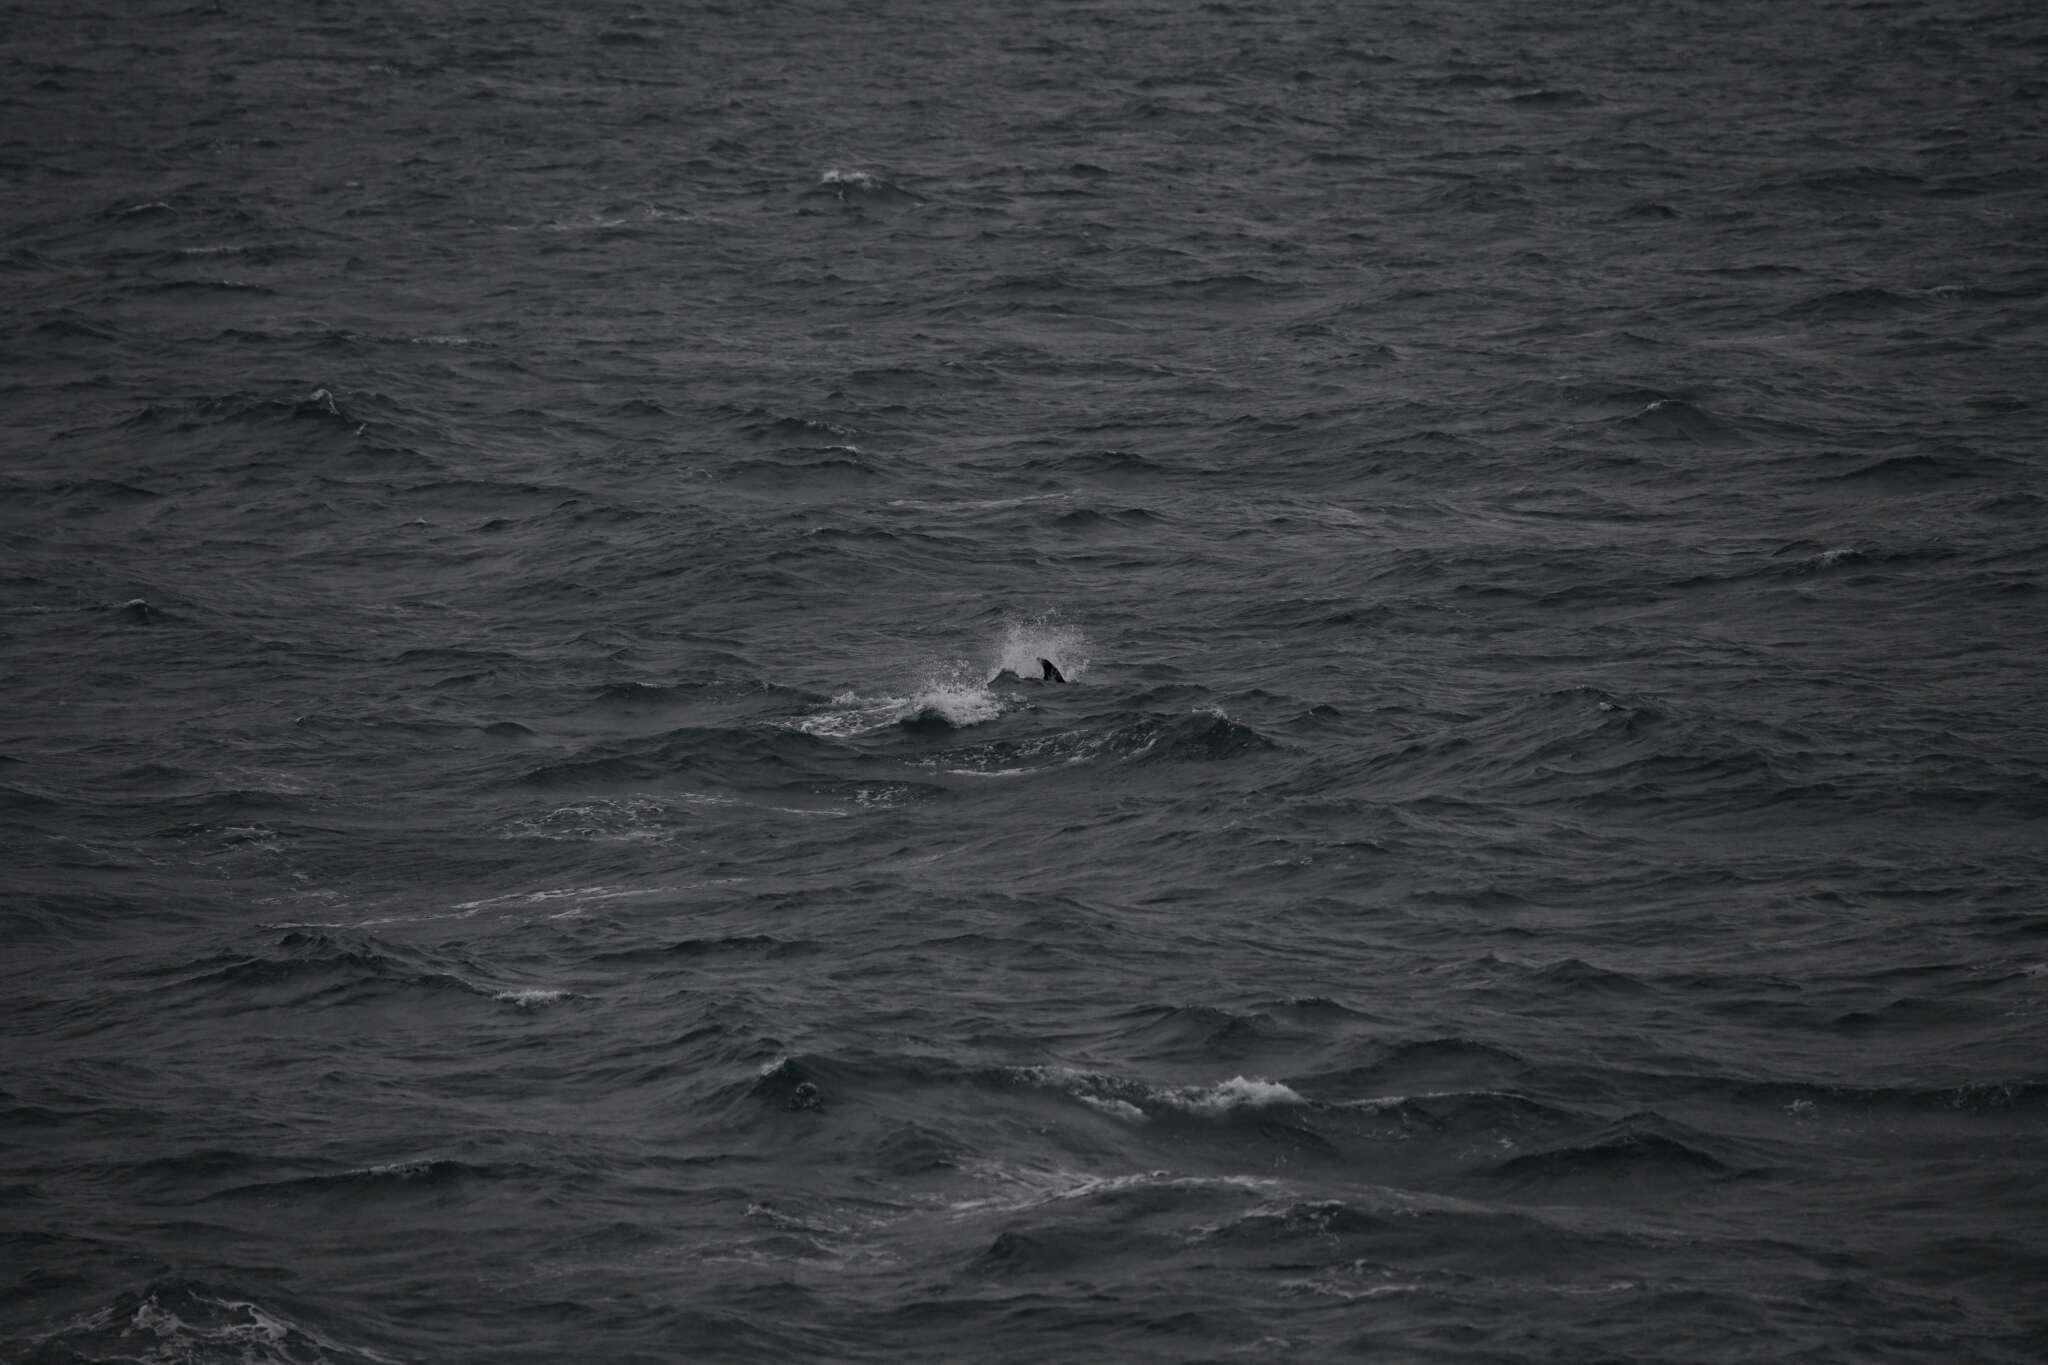 Image of White-beaked Dolphin